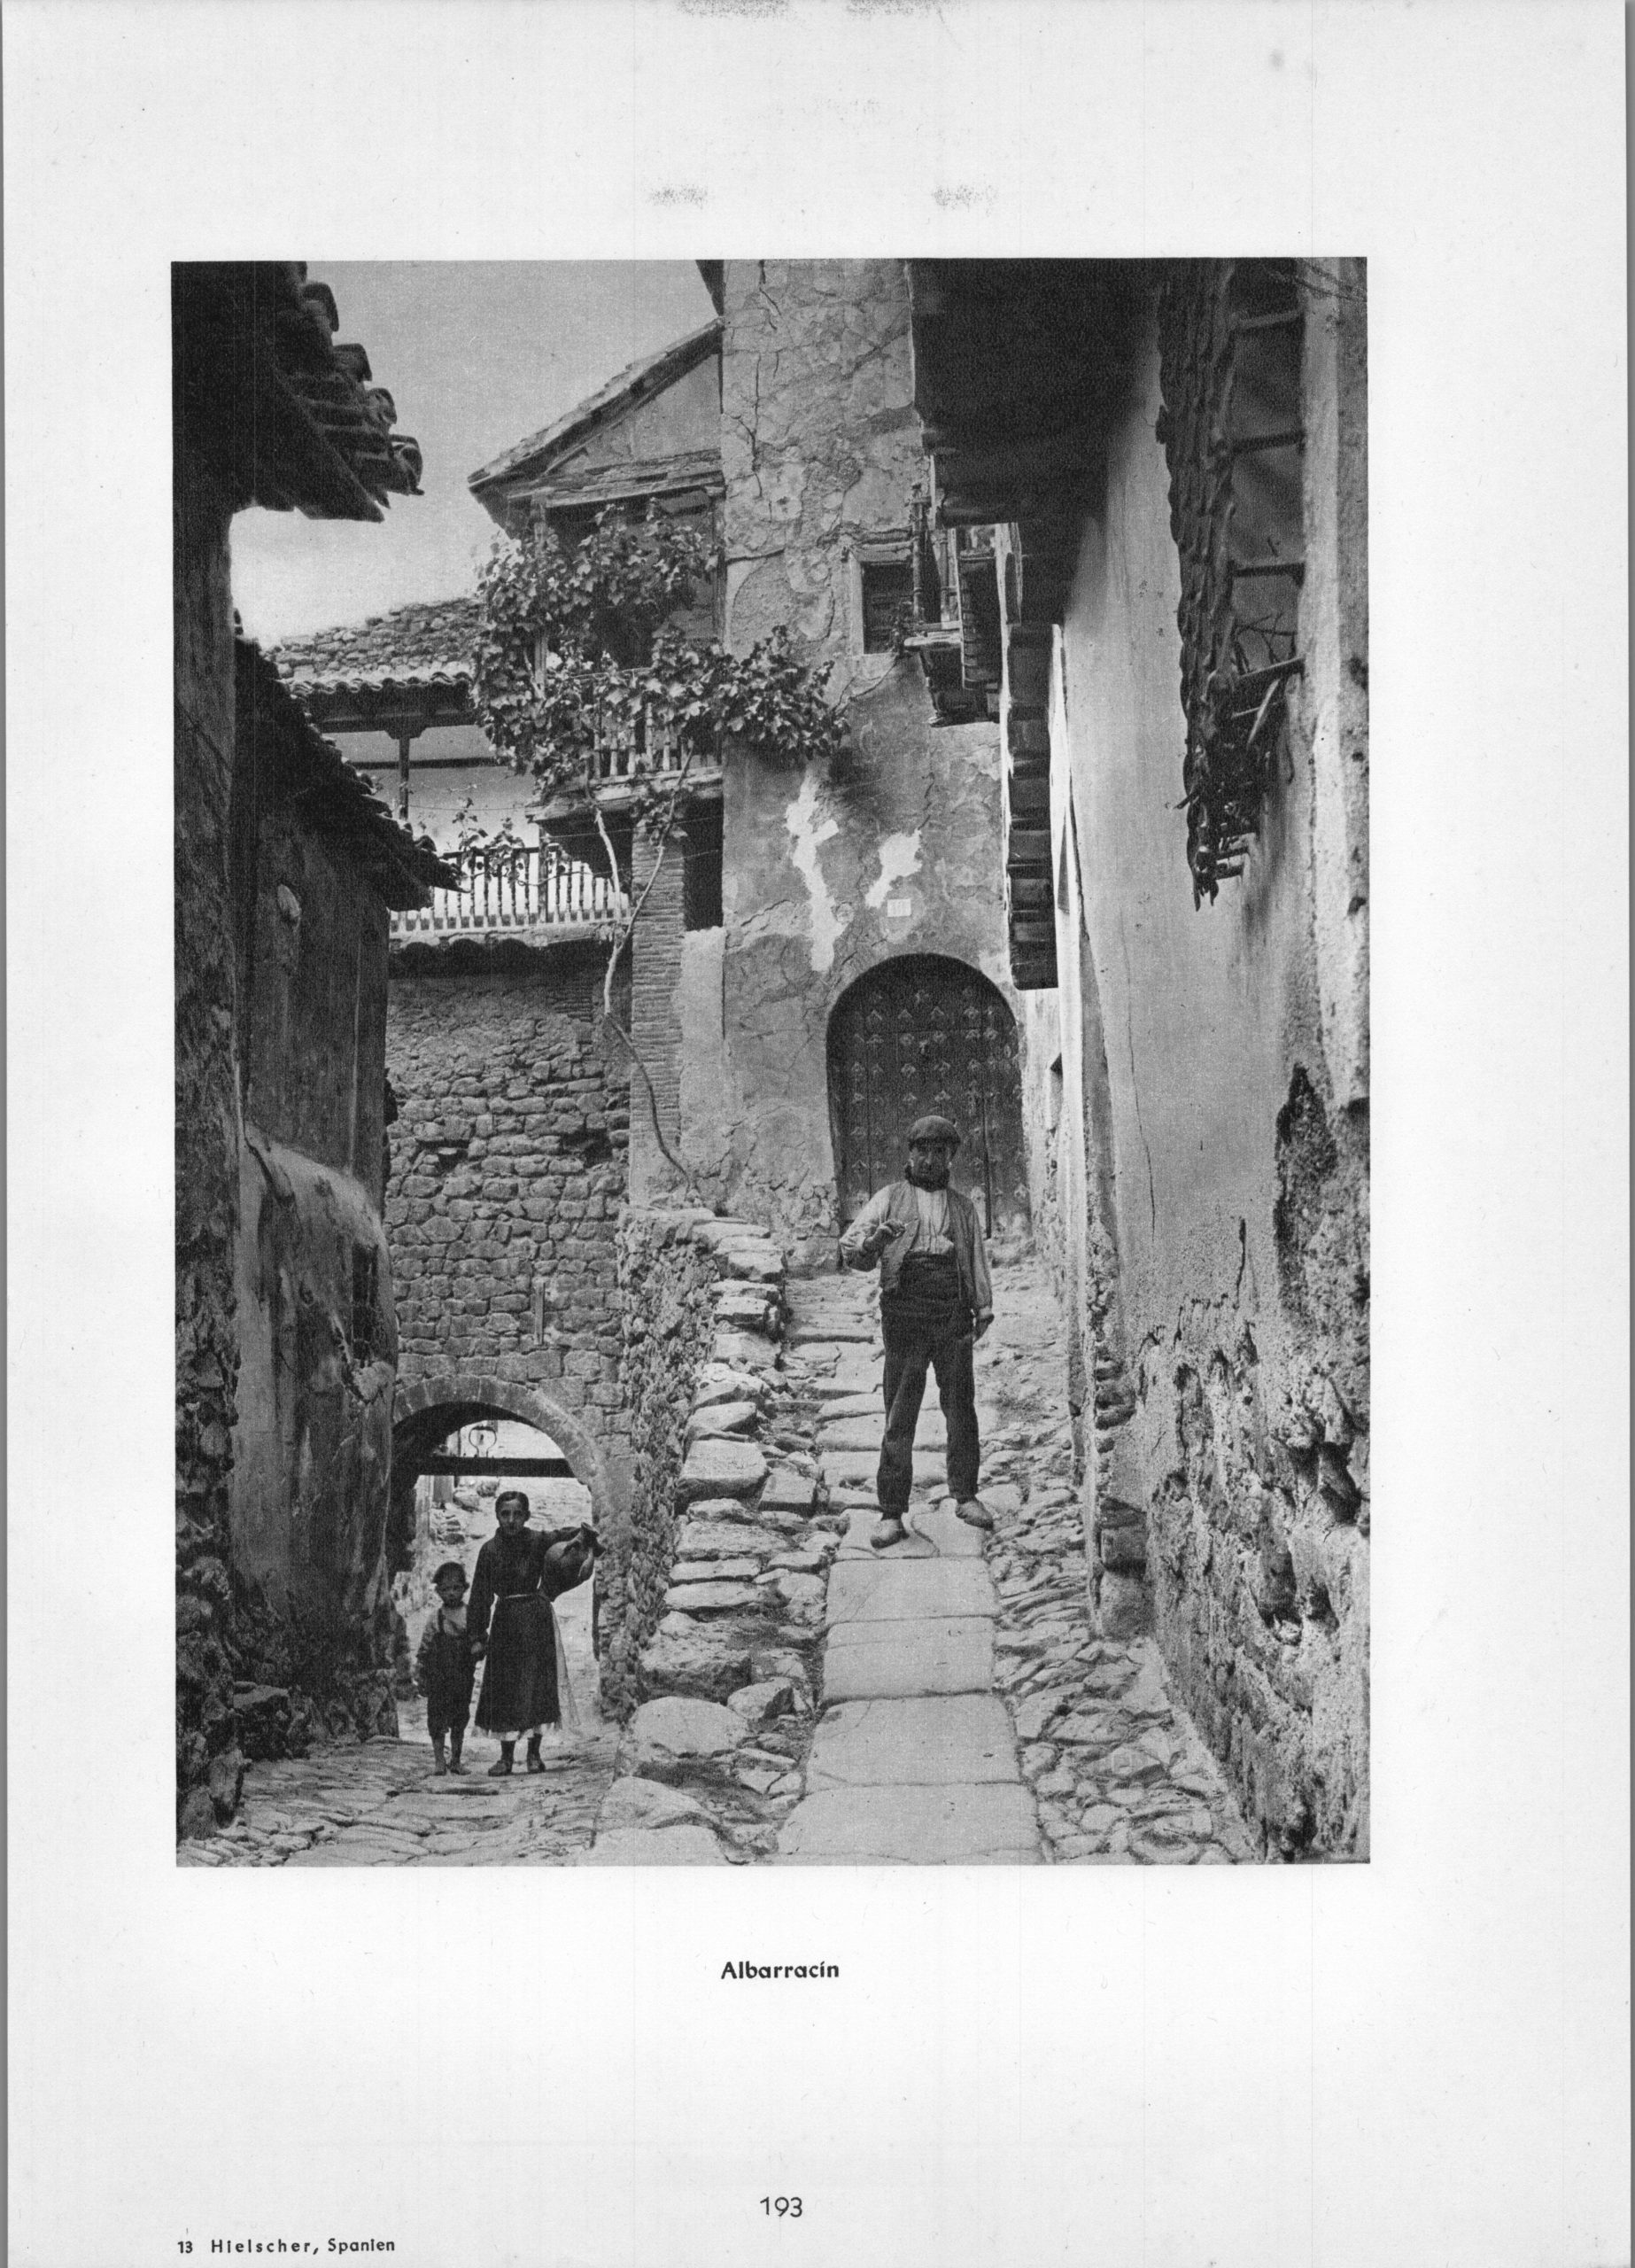 Albarracin - Village